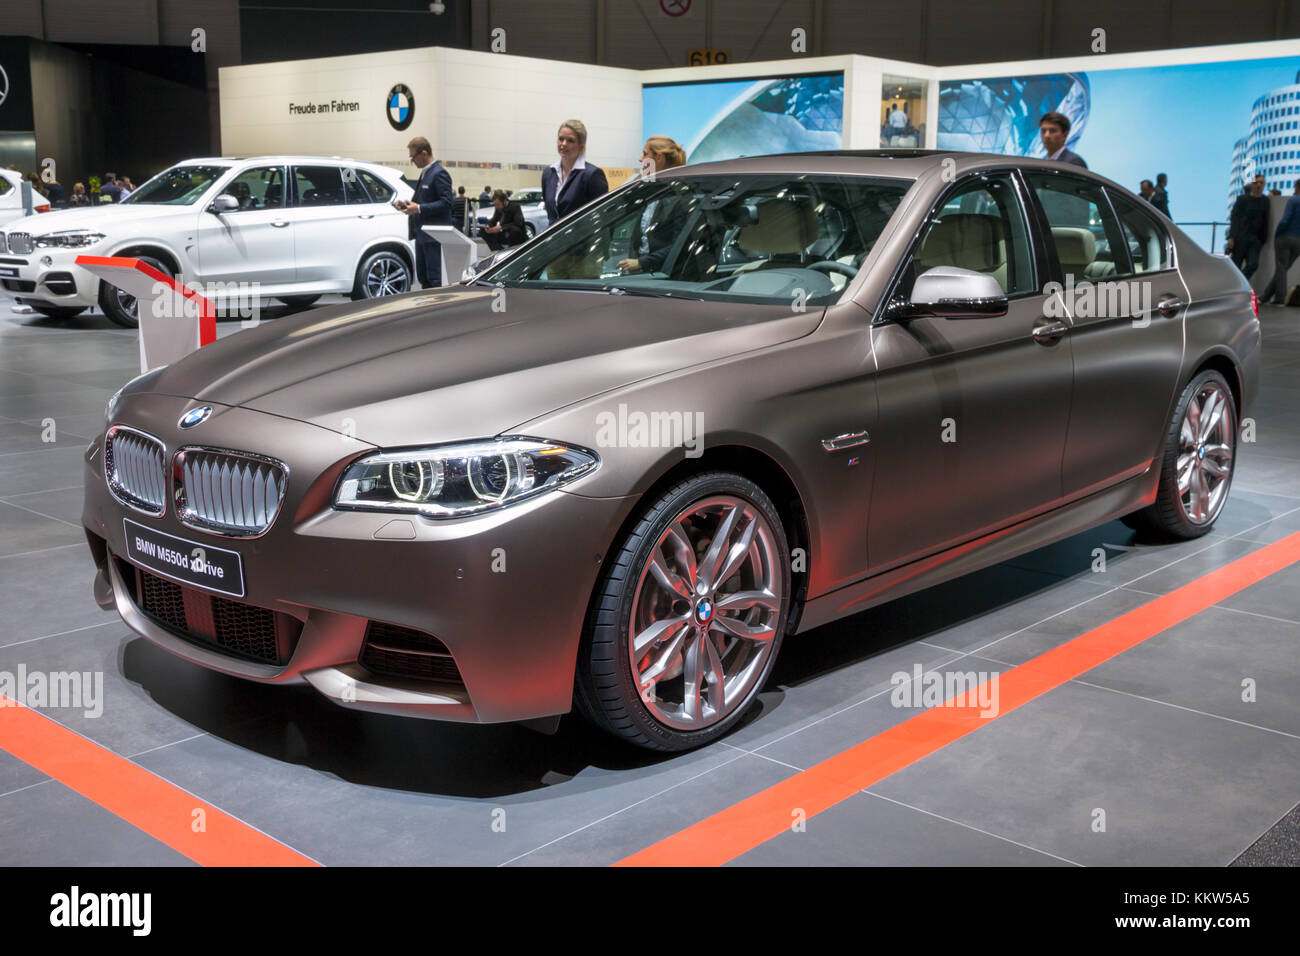 Genf, Schweiz - 1. MÄRZ 2016: BMW 760Le xDrive iPerformance Auto auf dem  86. Internationalen Automobilsalon in Genf präsentiert Stockfotografie -  Alamy